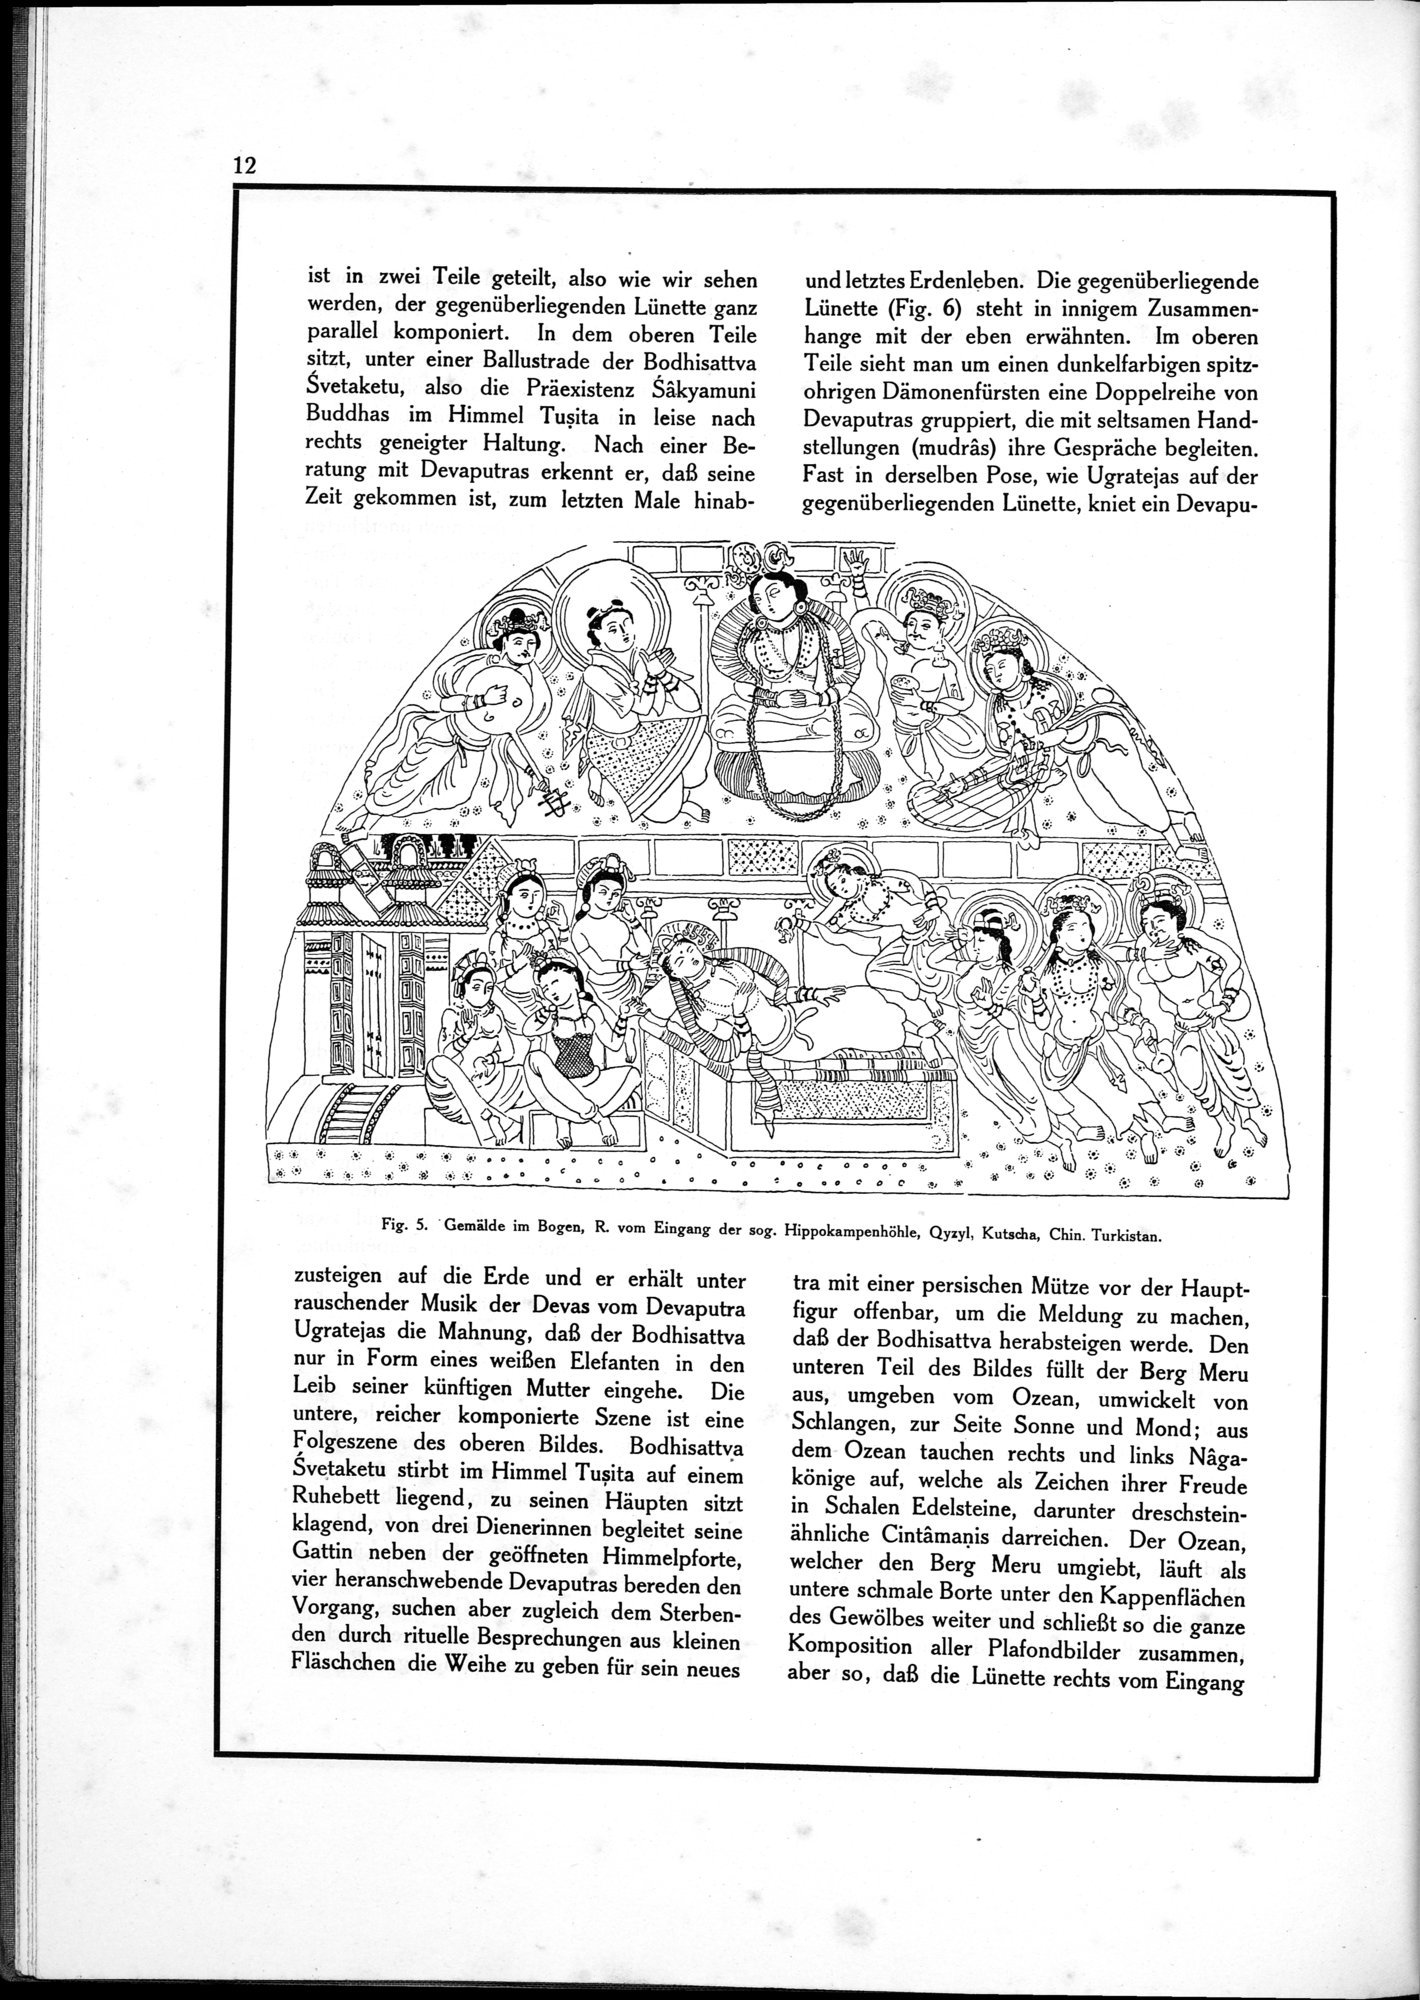 Die Teufel des Avesta und Ihre Beziehungen zur Ikonographie des Buddhismus Zentral-Asiens : vol.1 / Page 16 (Grayscale High Resolution Image)